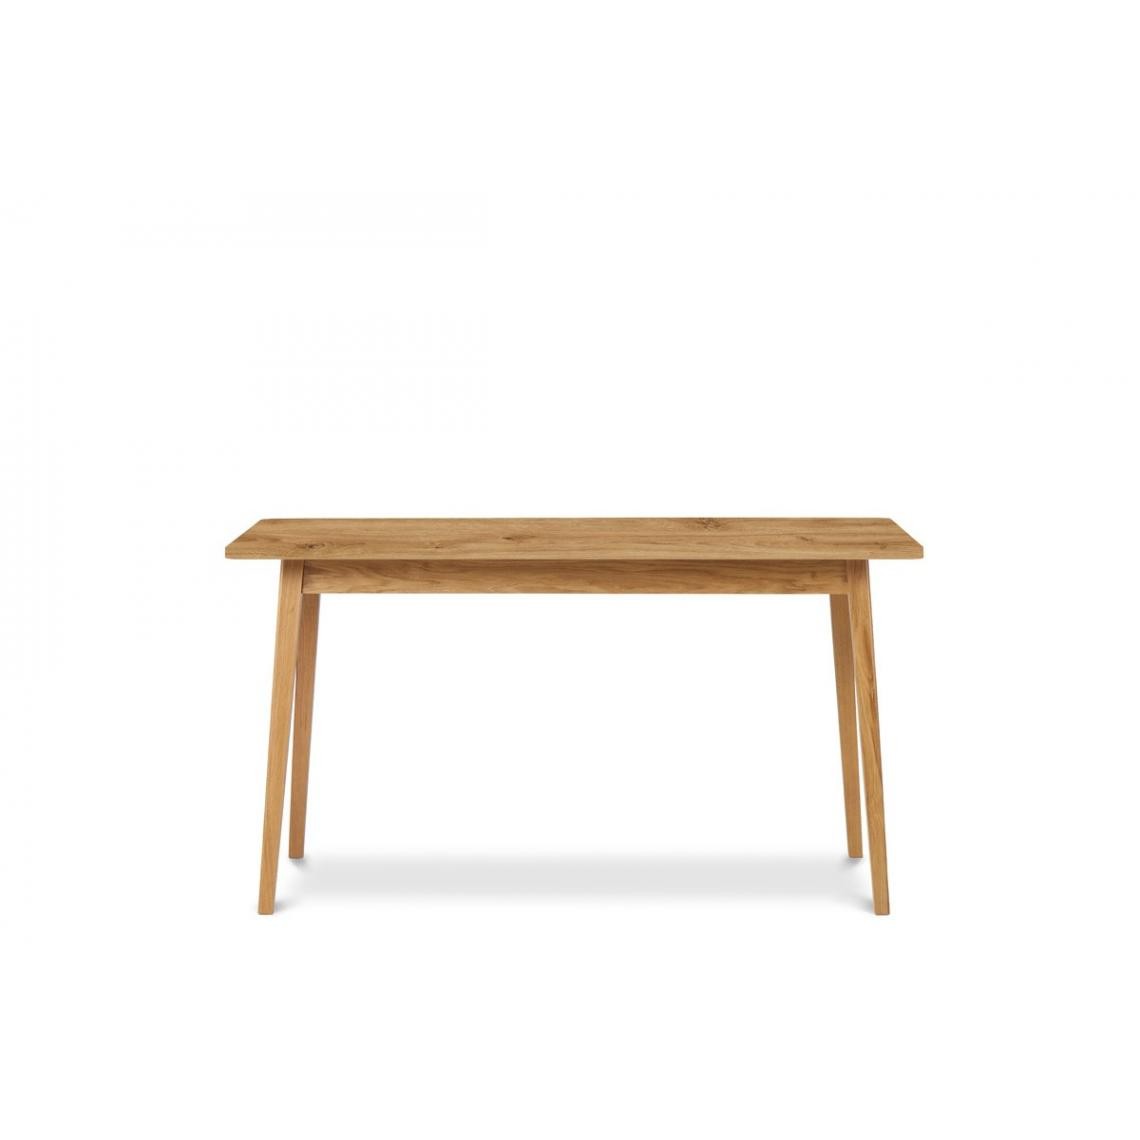 Hucoco - FRILI - Table de cuisine/salle à manger extensible style scandinave - 140-180x75x80 cm - Capacité 6-8 personnes - Pieds en bois - Chêne - Tables à manger